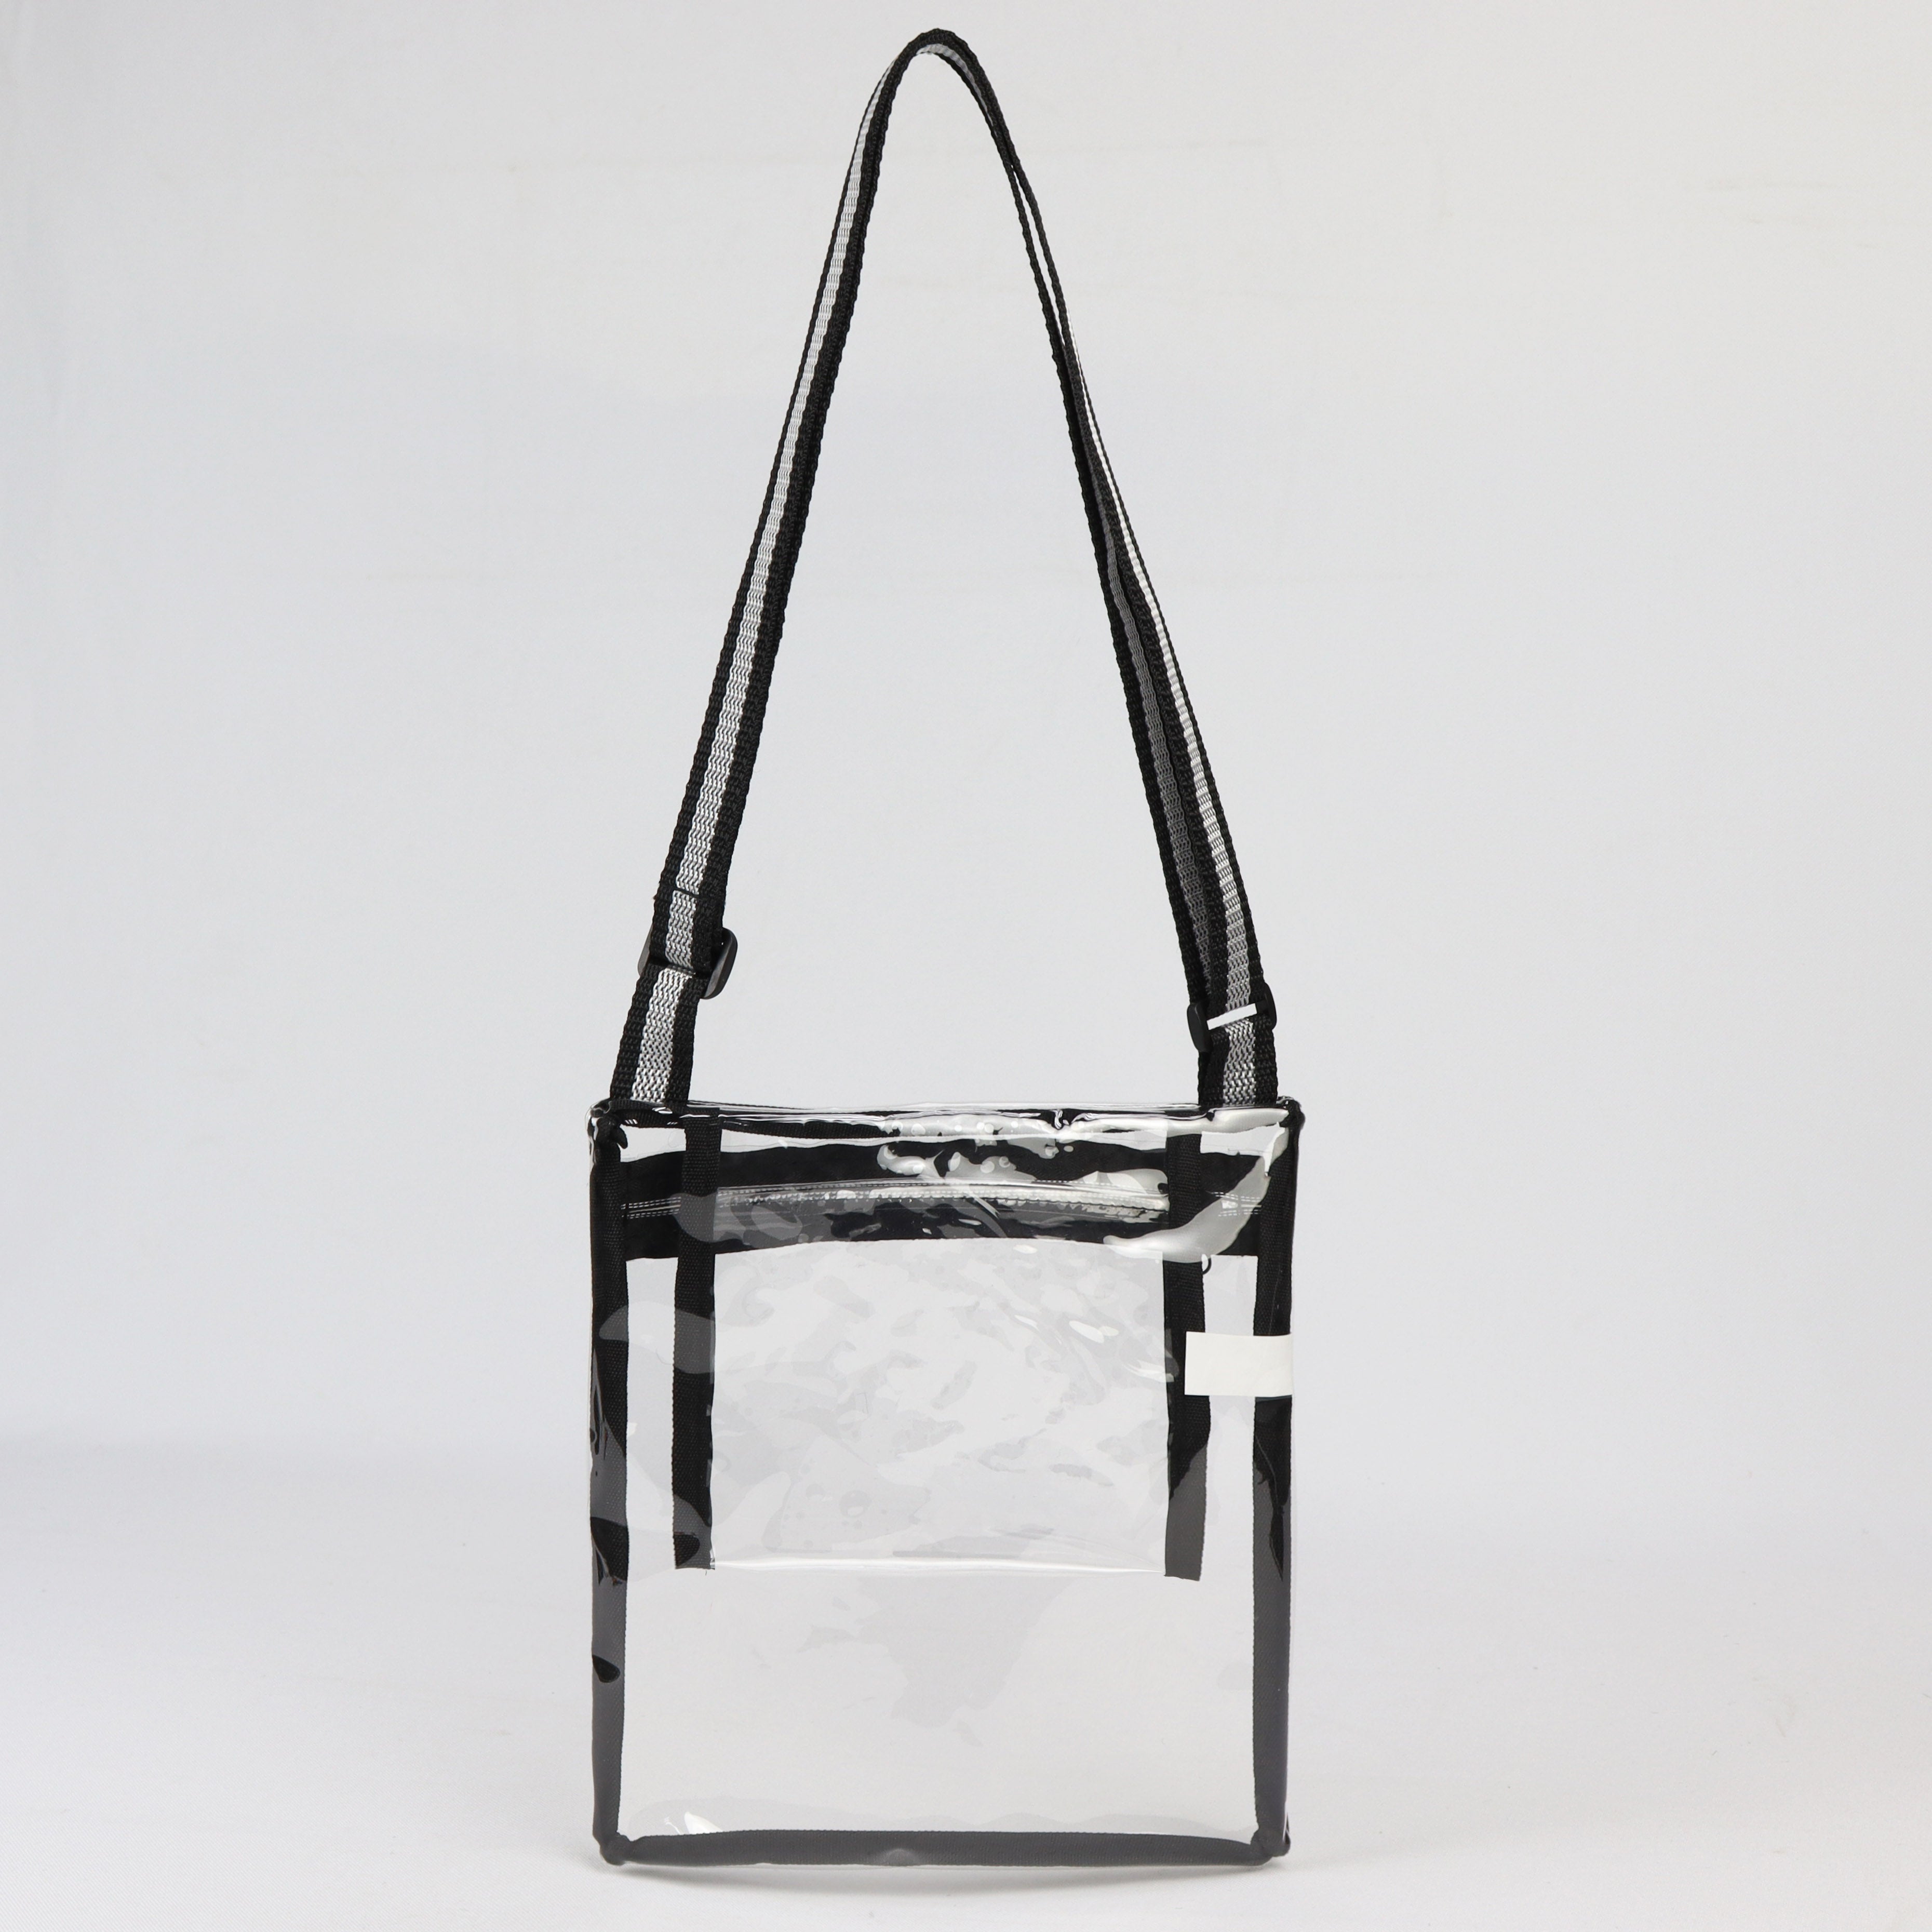 LS-TPU603 - Clear Satchel Bag